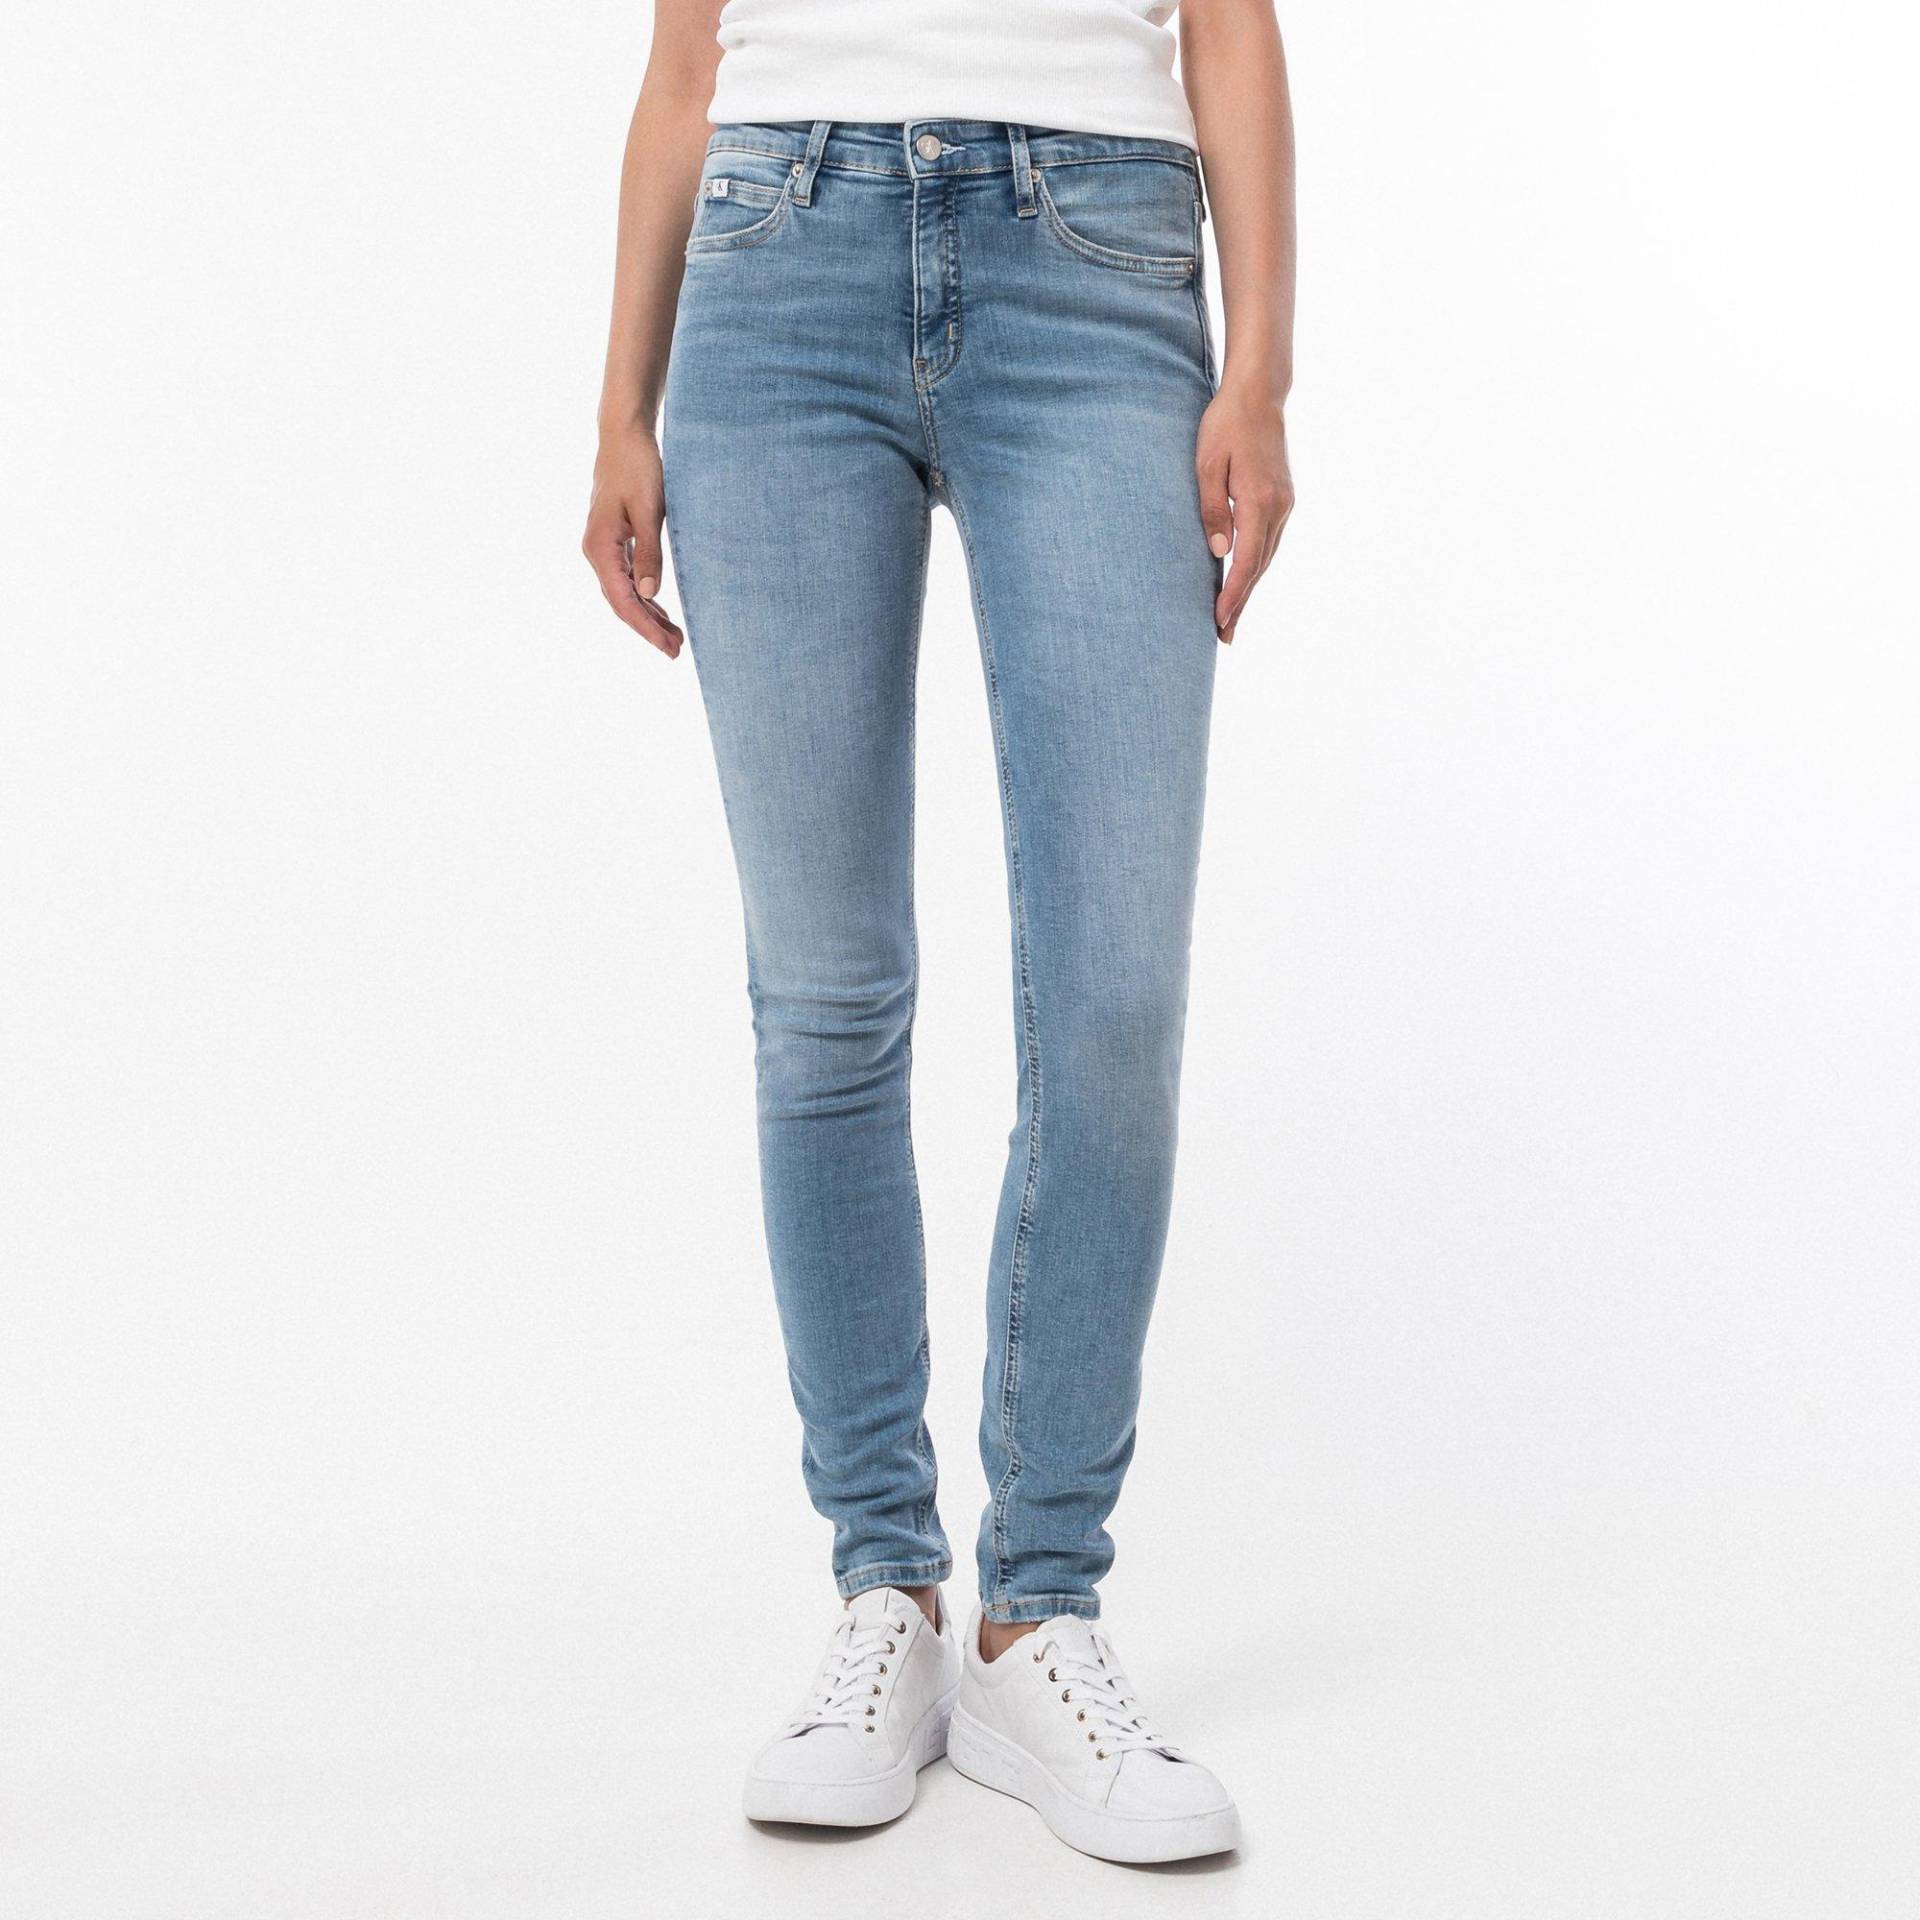 Jeans, Skinny Fit Damen Blau Denim W29 von Calvin Klein Jeans